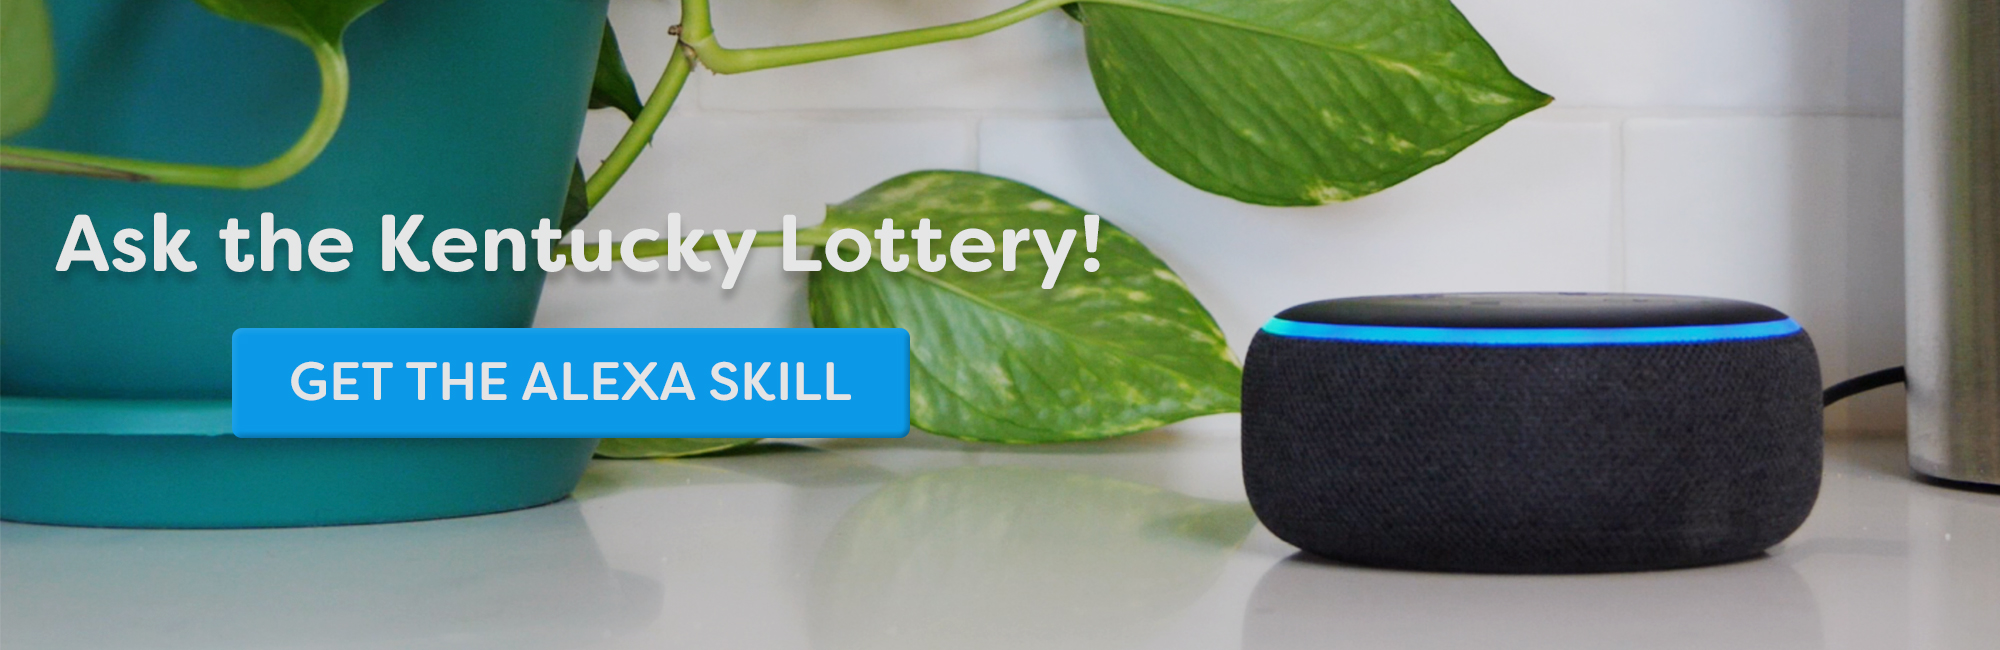 Enable the Kentucky Lottery Alexa Skill!